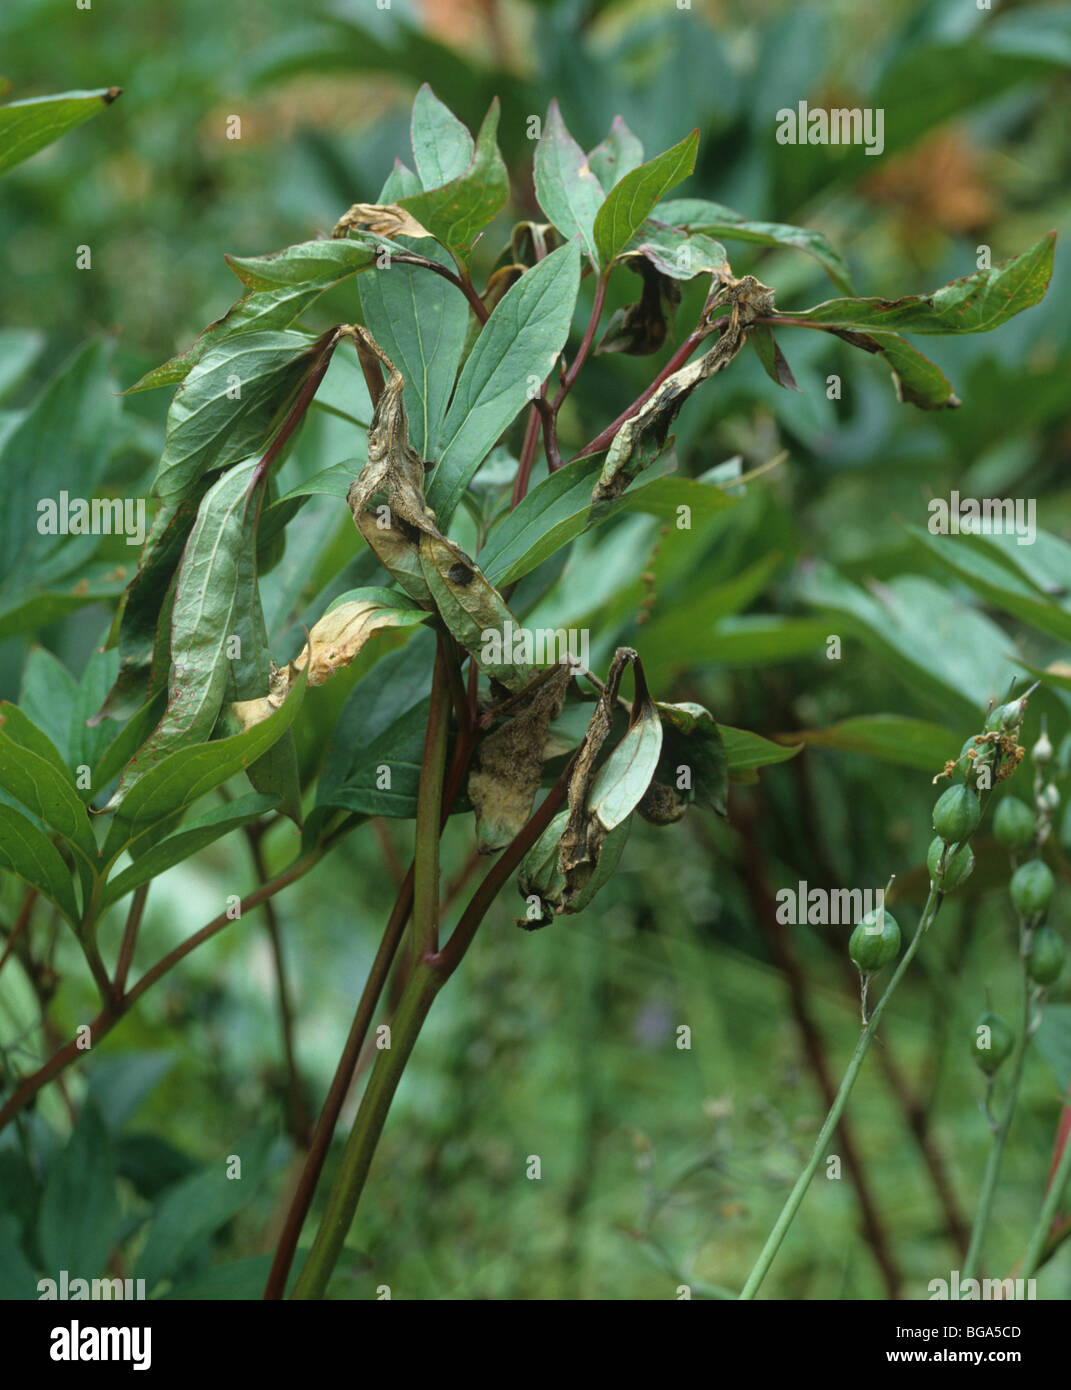 Peony mould (Botrytis paeoniae) on Peony (Paeonia spp.) foliage Stock Photo